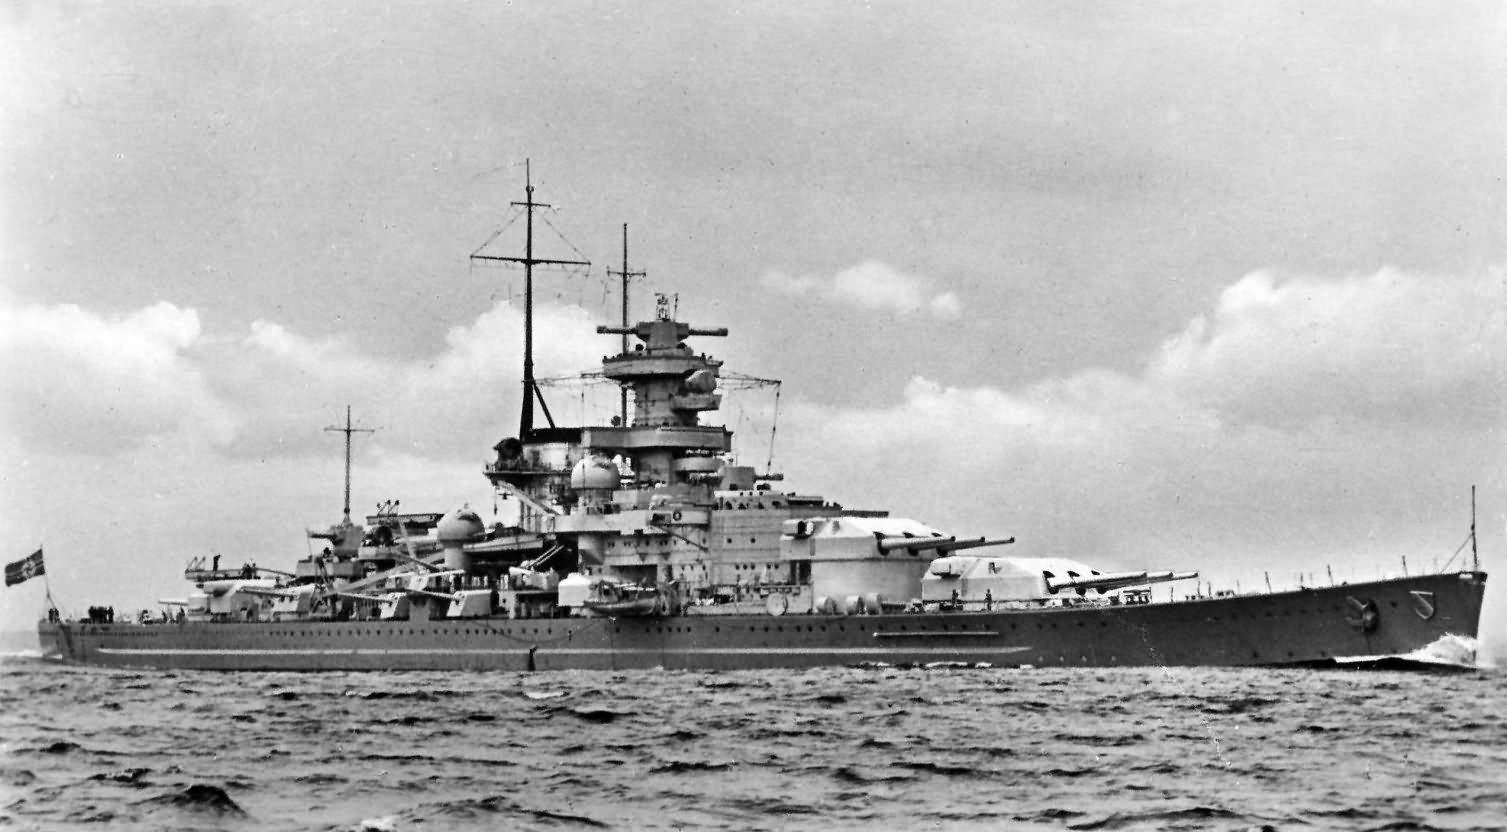 Battleship Scharnhorst broadside view